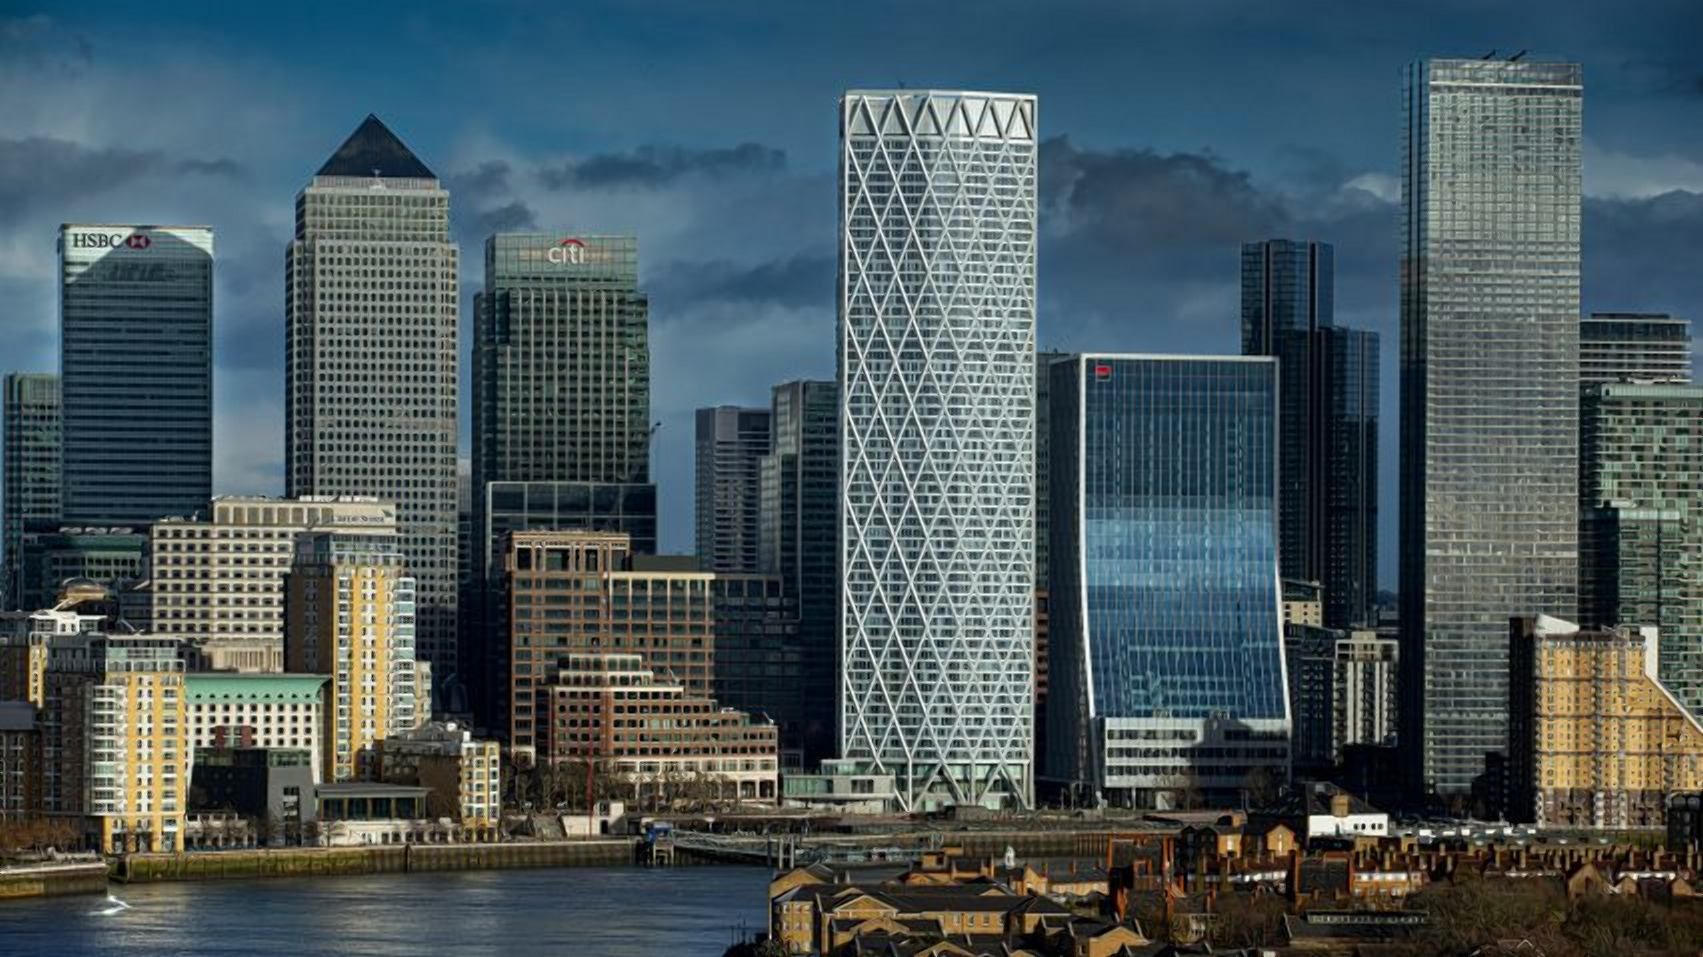 Коли форма вражає: у Лондоні звели хмарочос, загорнутий у геометричний екзоскелет - Нерухомість